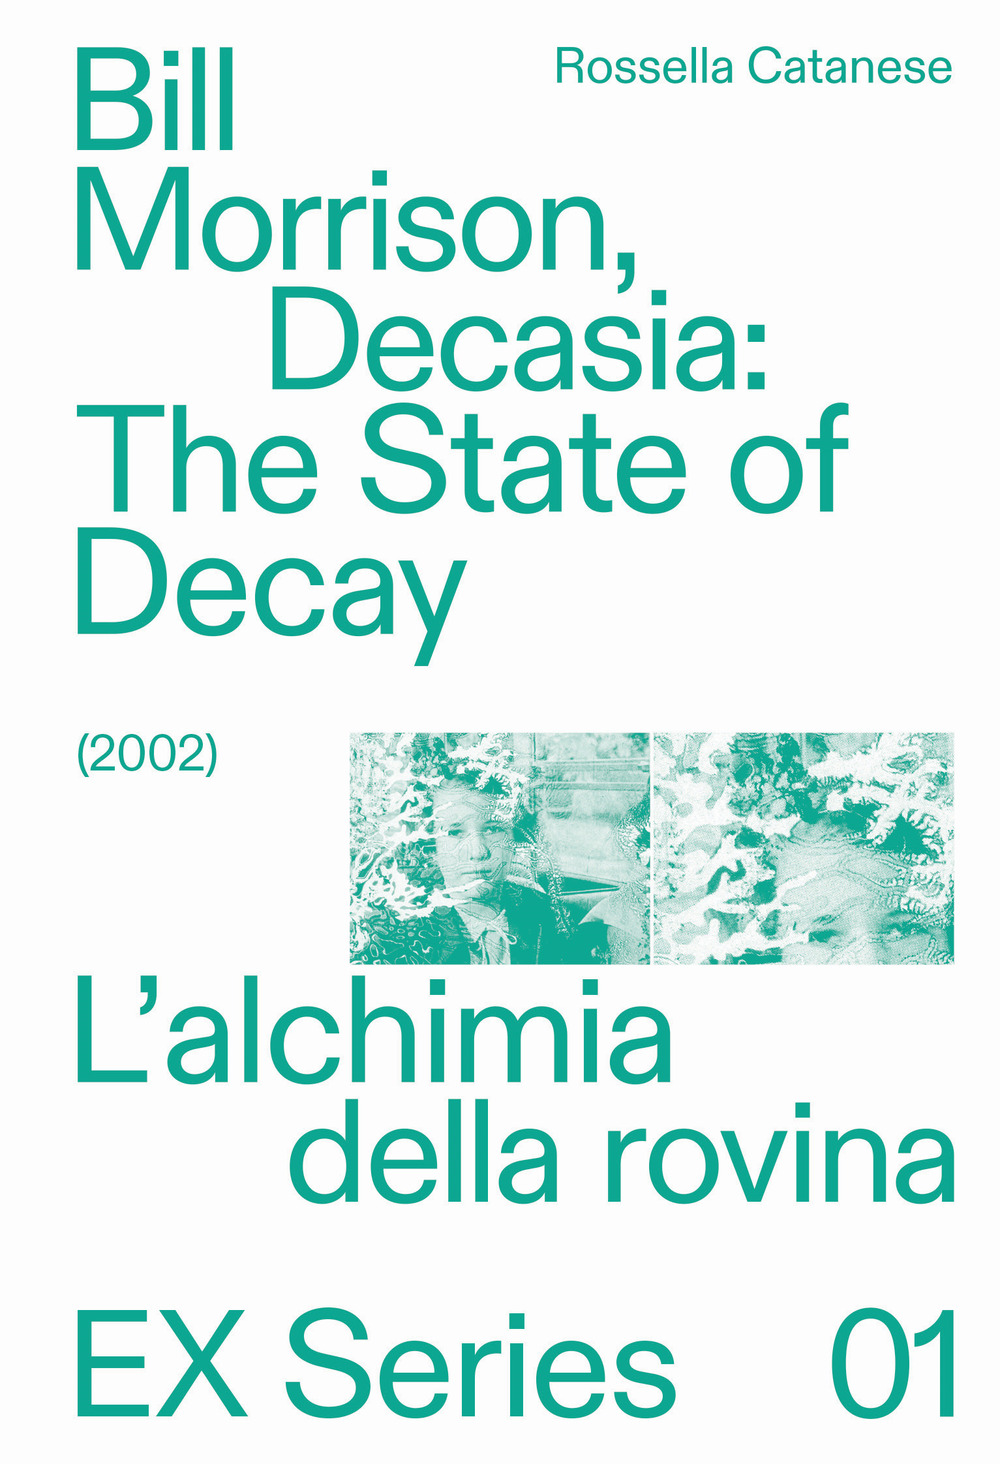 Bill Morrison, Decasia: The state of decay (2002). L'alchimia della rovina